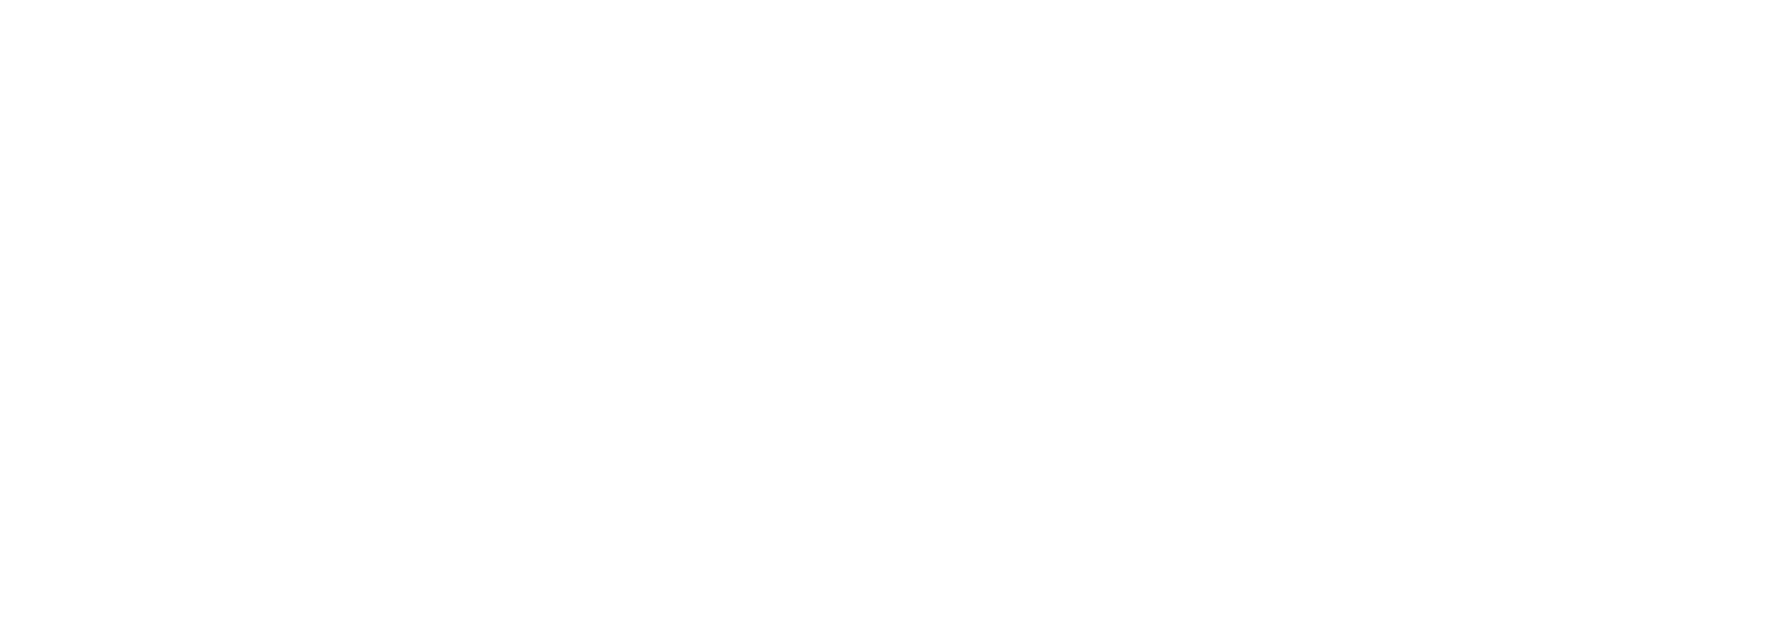 Terwillegar Community Church